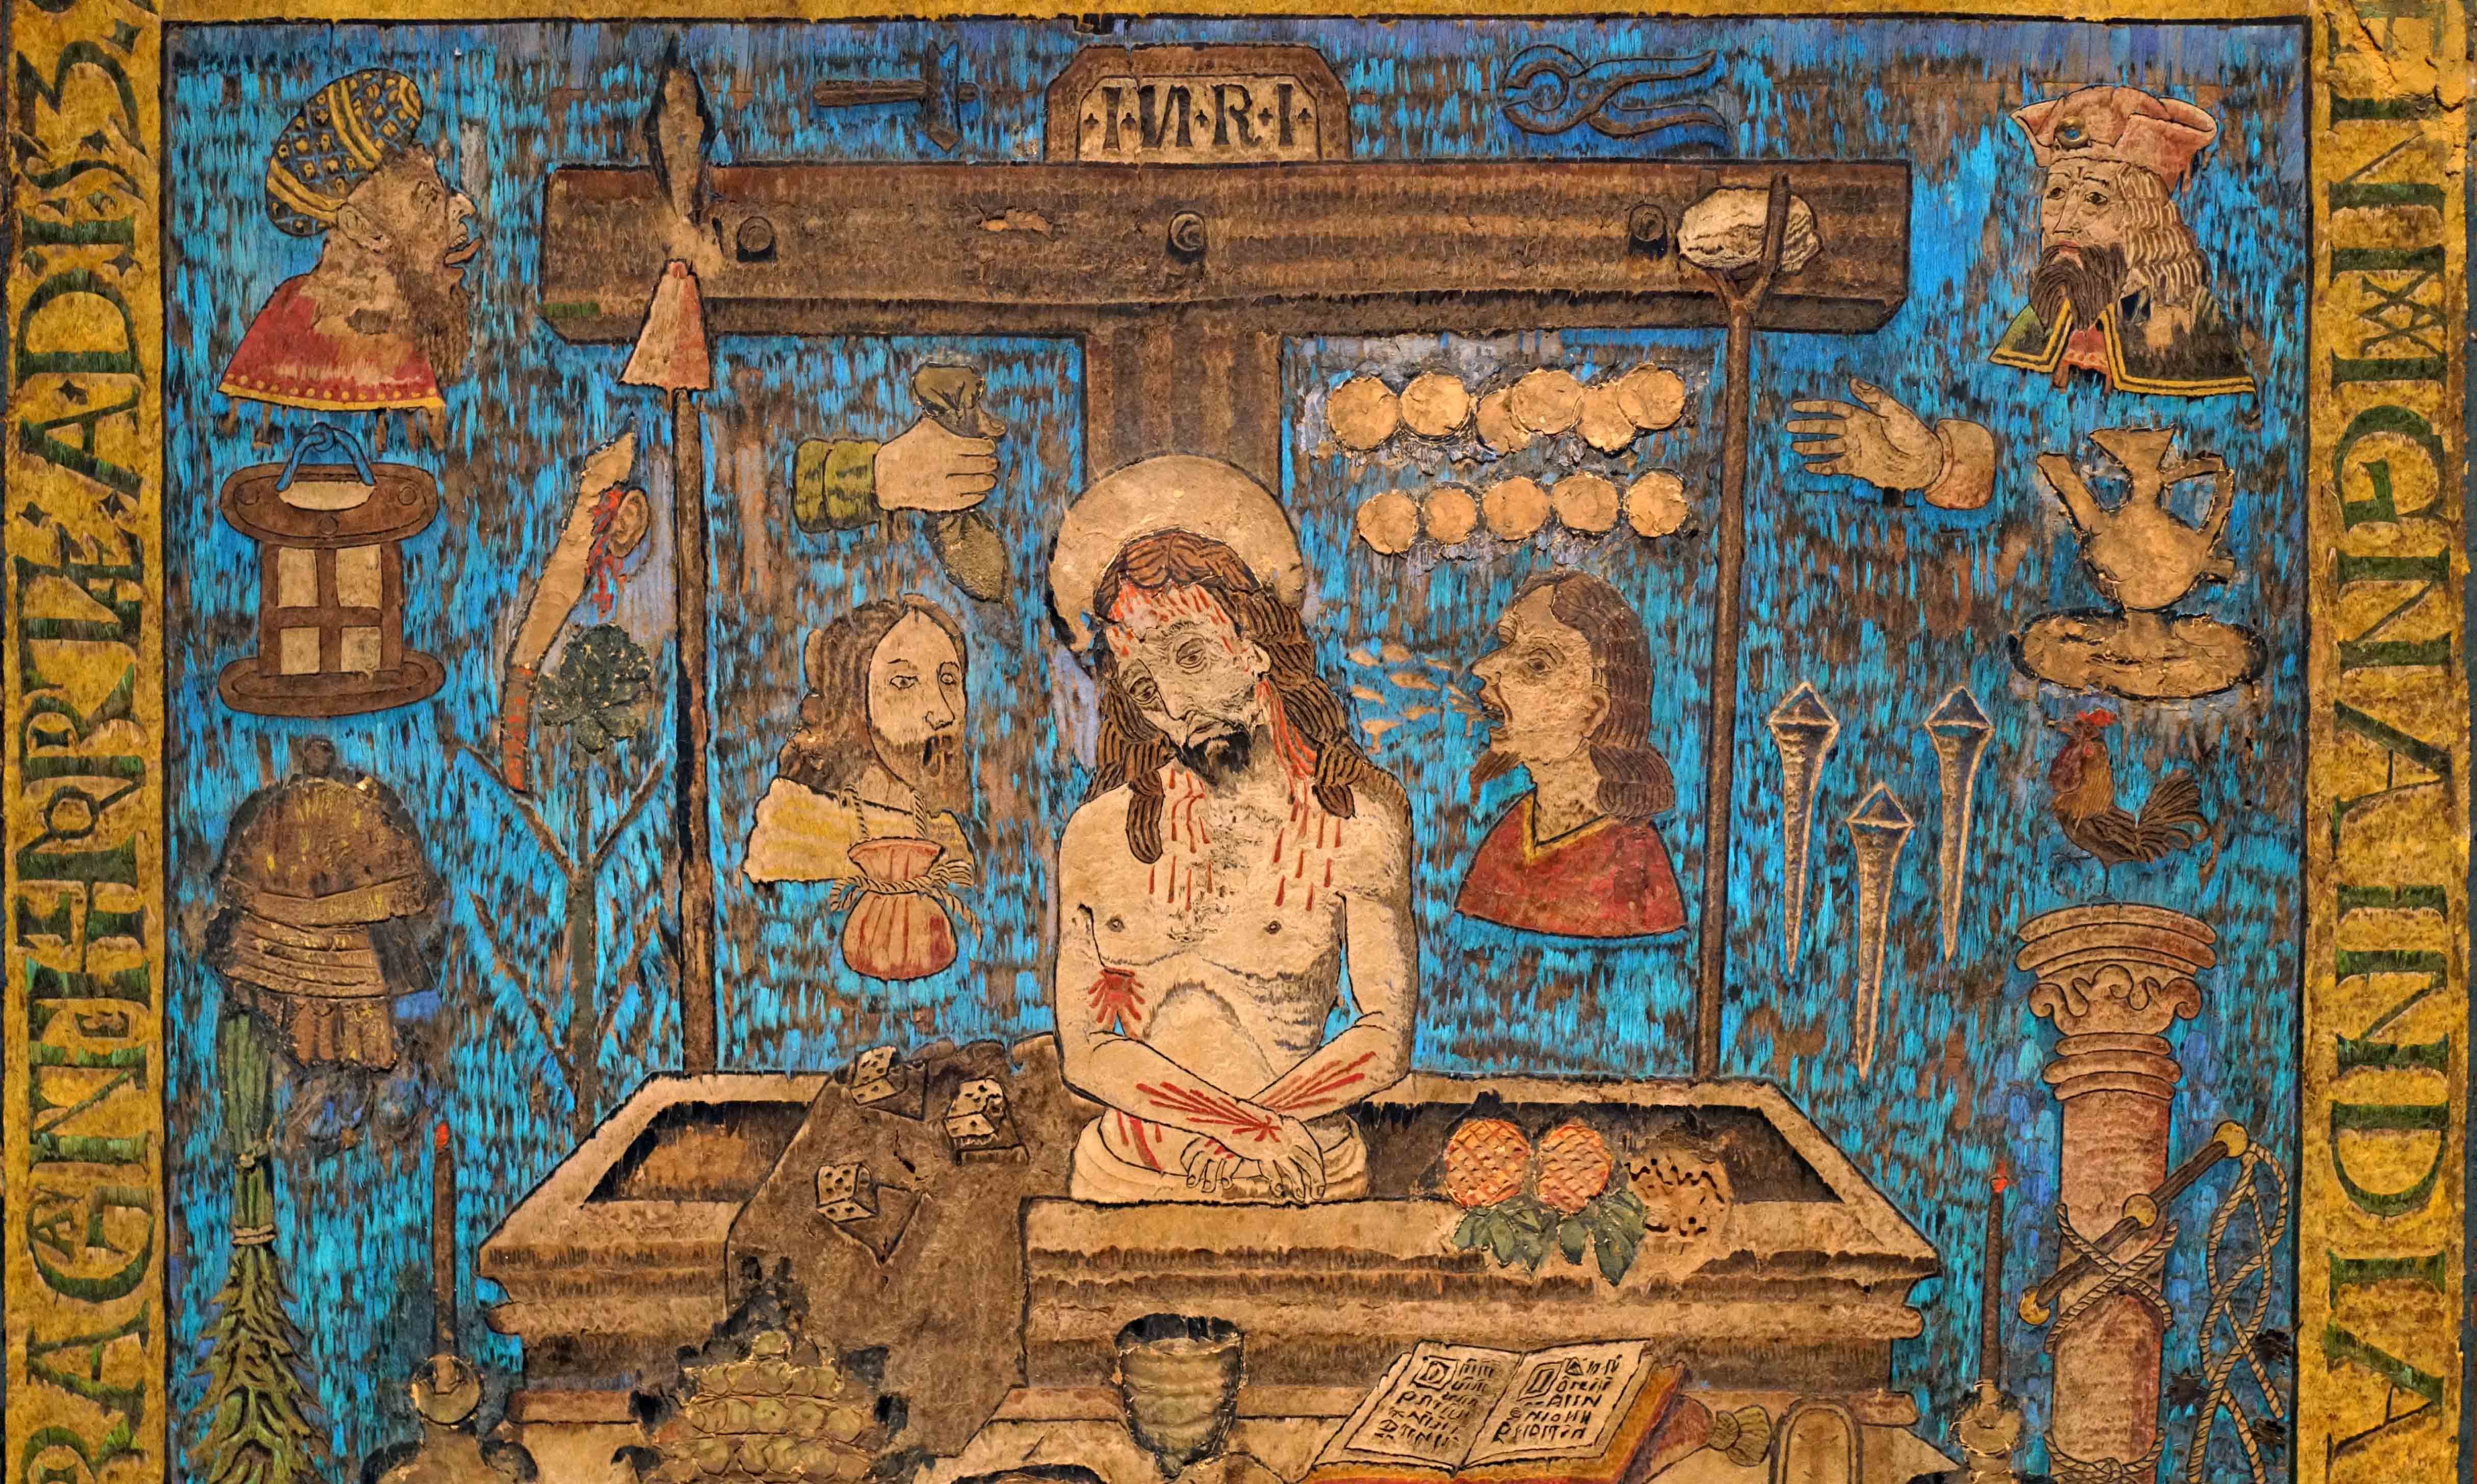 gregory mural artist los angeles